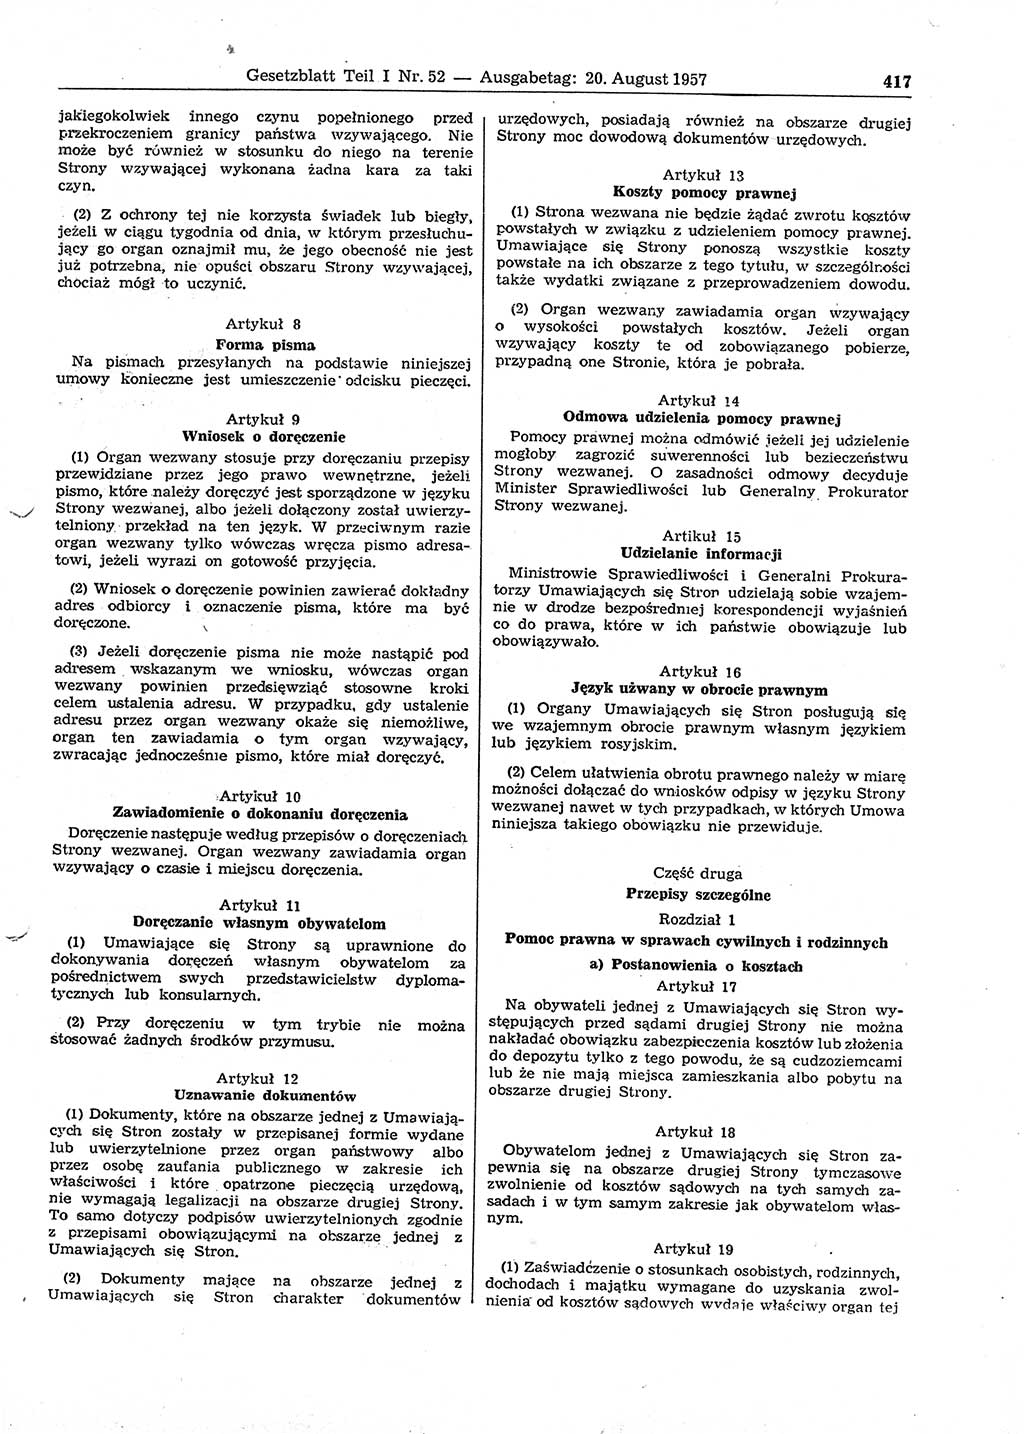 Gesetzblatt (GBl.) der Deutschen Demokratischen Republik (DDR) Teil Ⅰ 1957, Seite 417 (GBl. DDR Ⅰ 1957, S. 417)